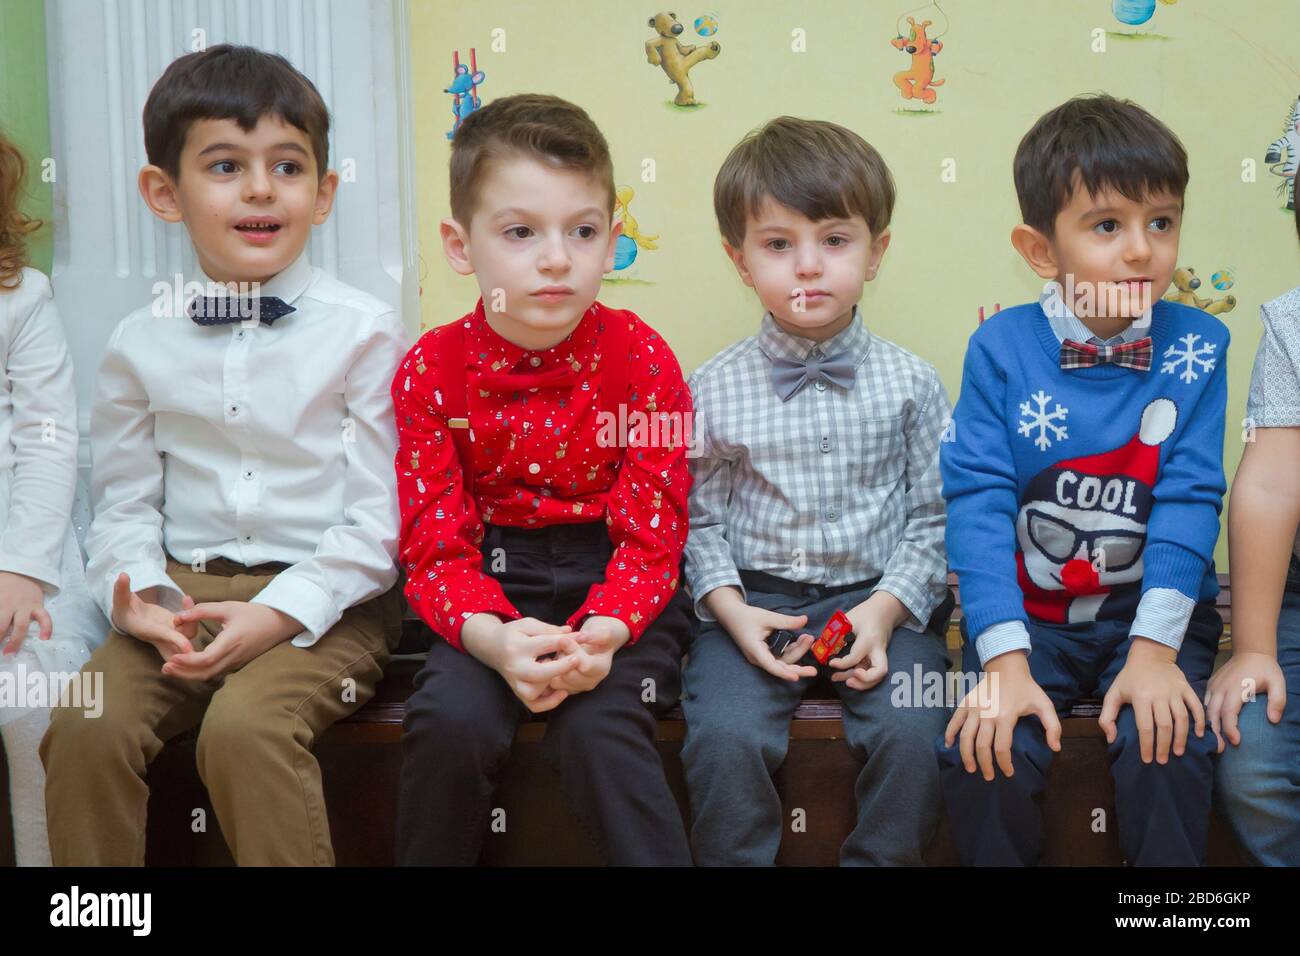 Neujahrsfeier im Kindergarten mit DED Moroz Großvater Frost und Snow-Maiden. Kleine Kinder spielen. Weihnachtsmann im Neujahrsurlaub Stockfoto